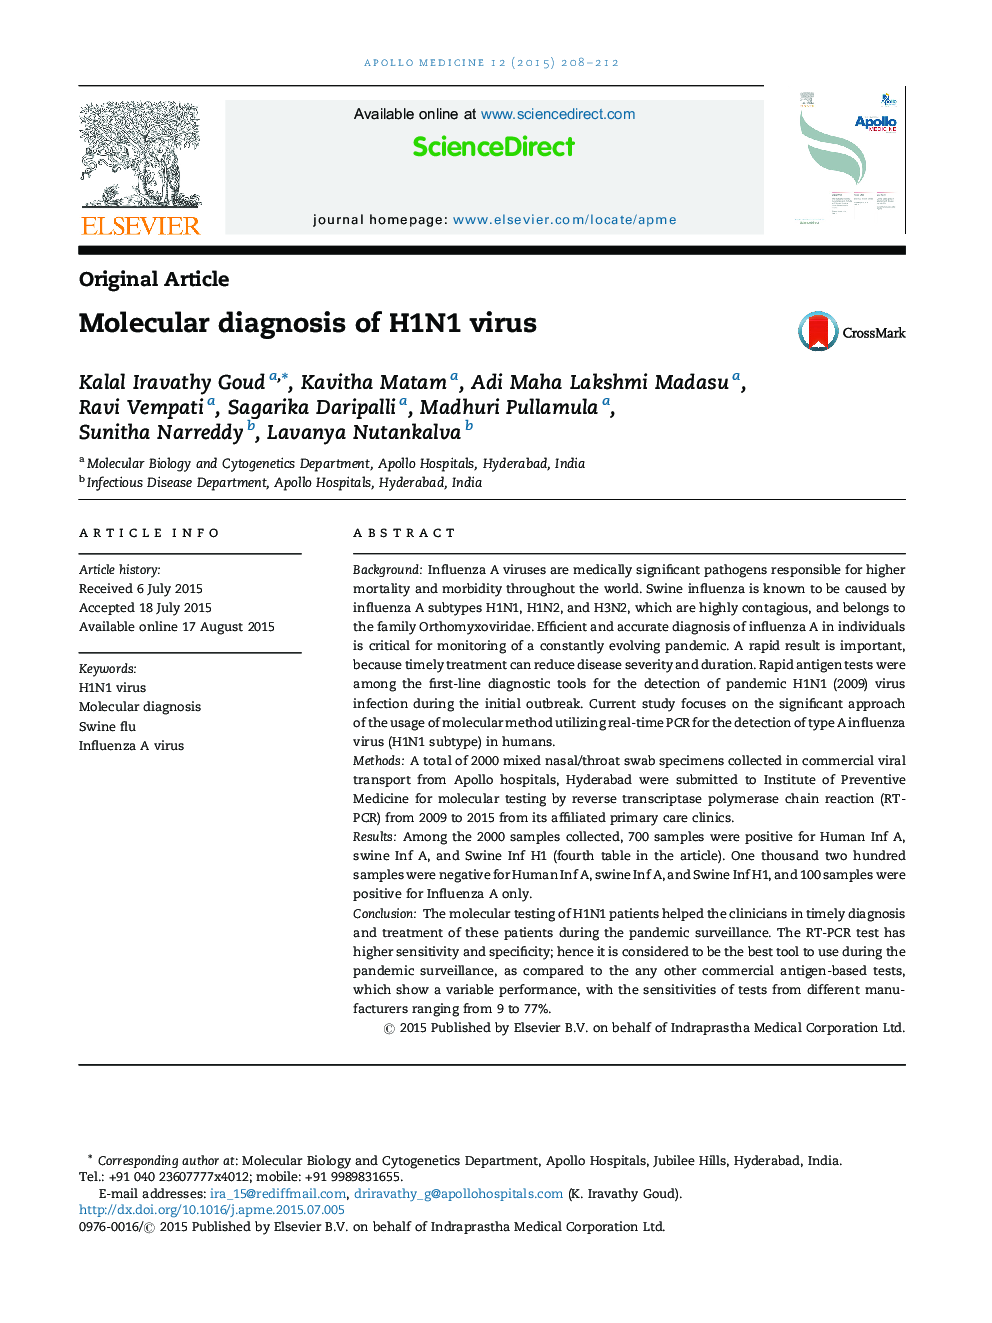 تشخیص مولکولی ویروس H1N1